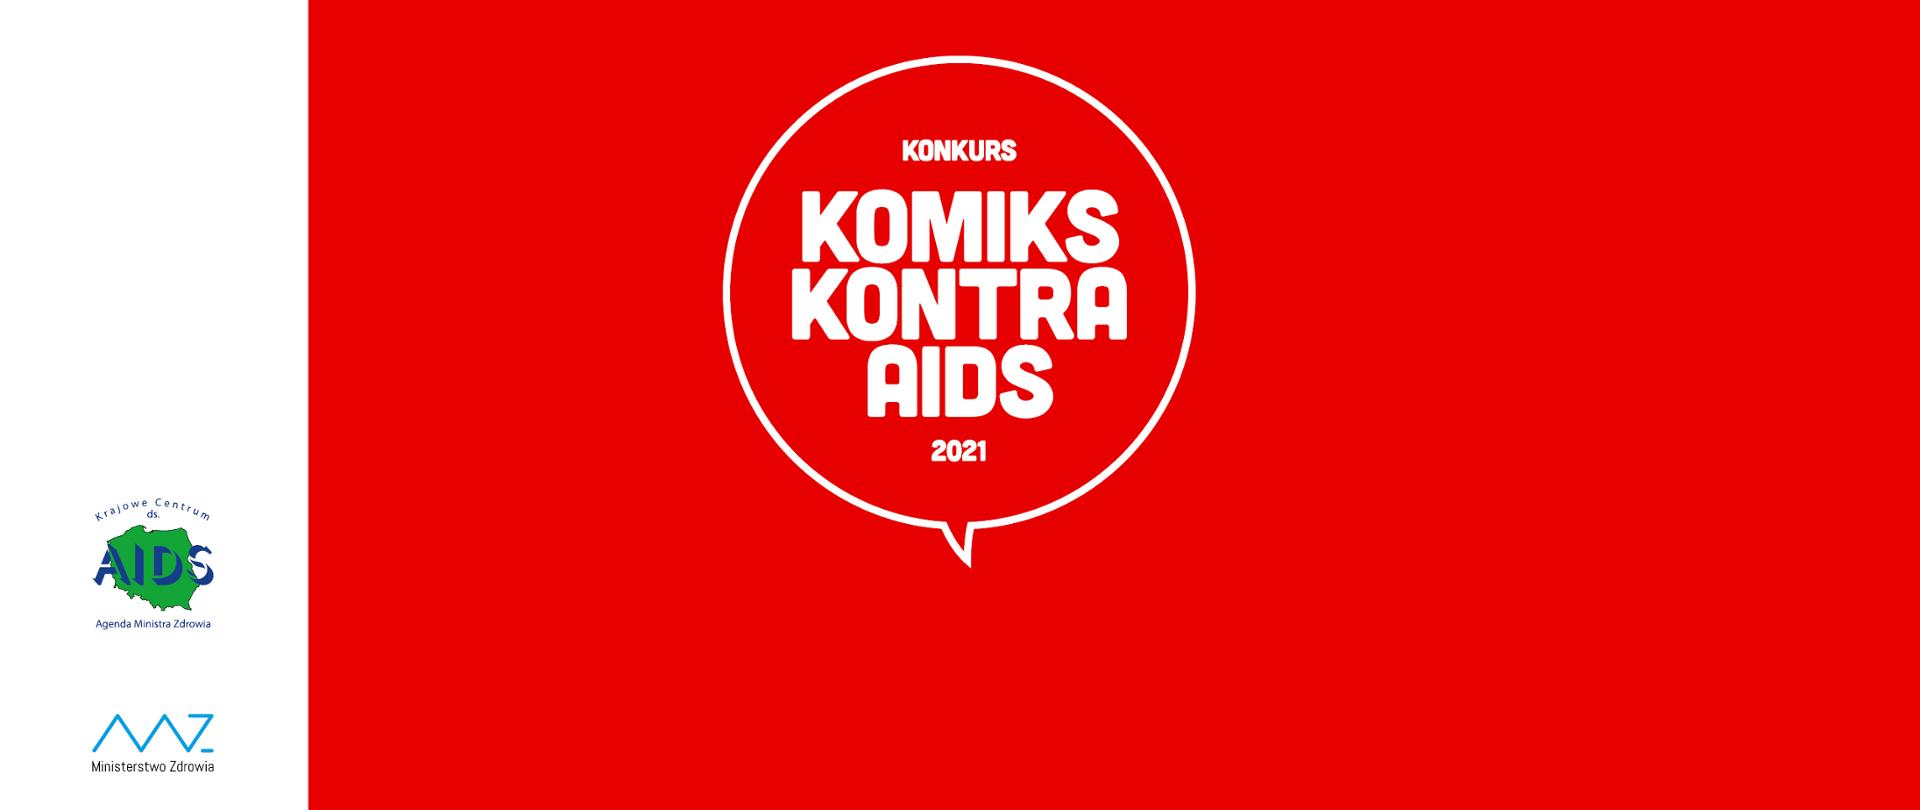 Grafika przedstawiająca czerwone tło z dymkiem, w którym znajduje się napis "Komiks Kontra Aids 2021" opatrzona logiem Krajowego Centrum ds. AIDS i Ministerstwa Zdrowia